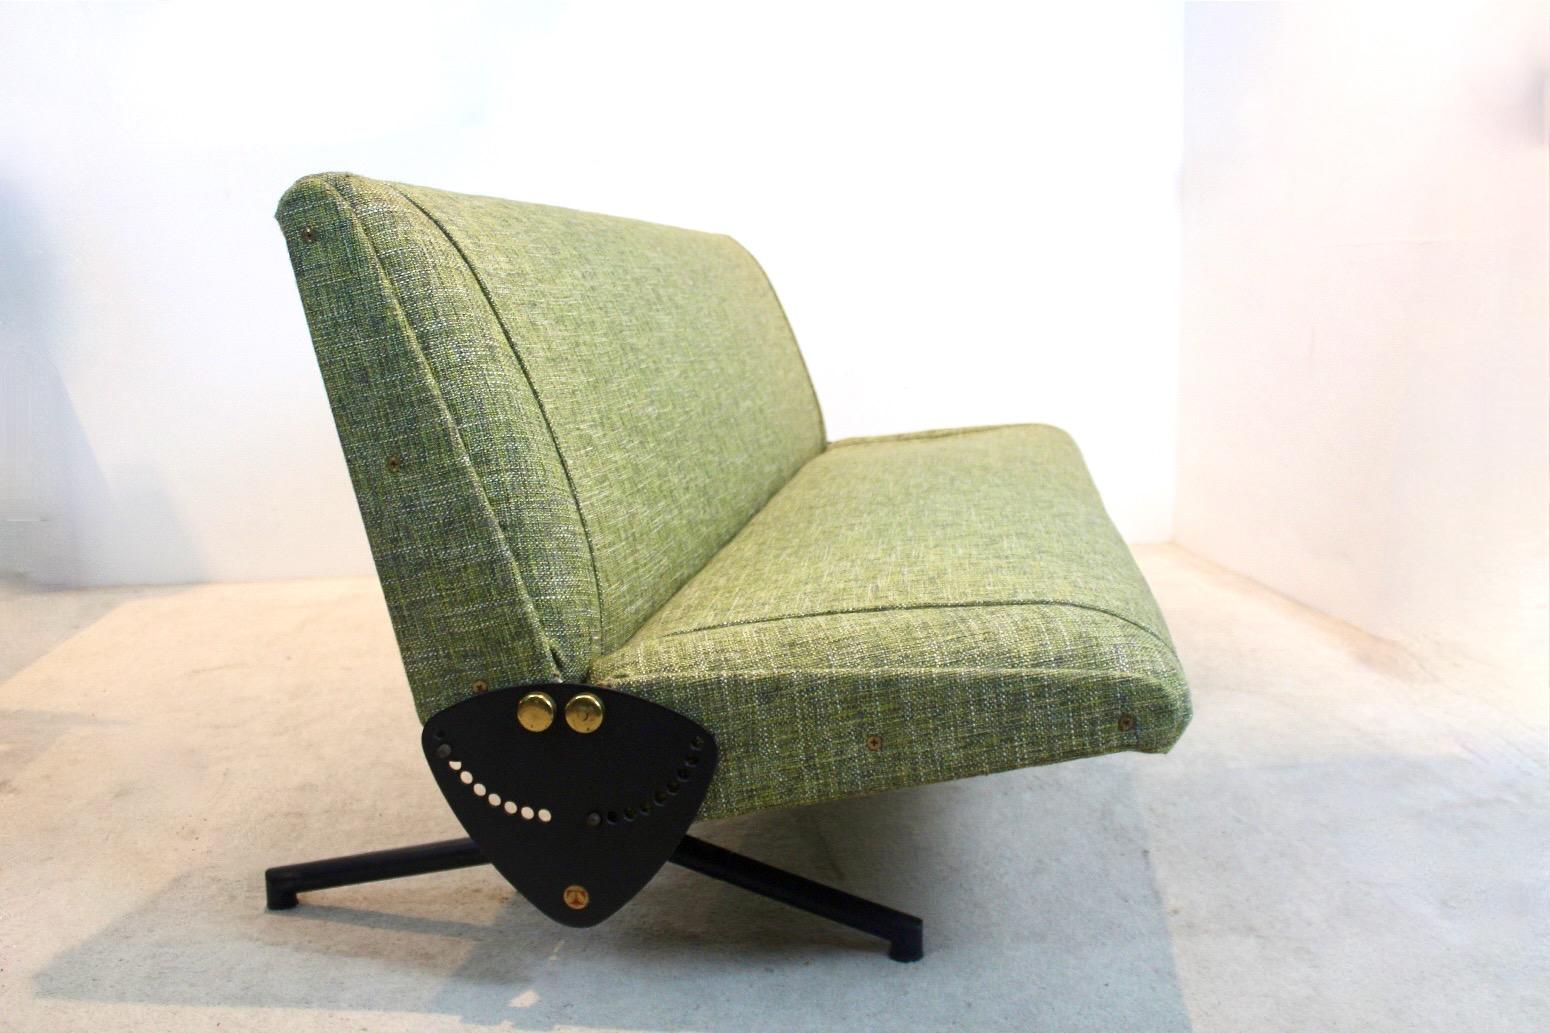 Sofa/Tagesbett 'D70', entworfen von Osvaldo Borsani und hergestellt von Tecno, Italien 1954. Dieses anpassbare D70-Sofa hat zwei schwenkbare Flügel, ein sehr stabiles Metallgestell und einen schönen, frischen olivgrünen Stoffbezug. Der